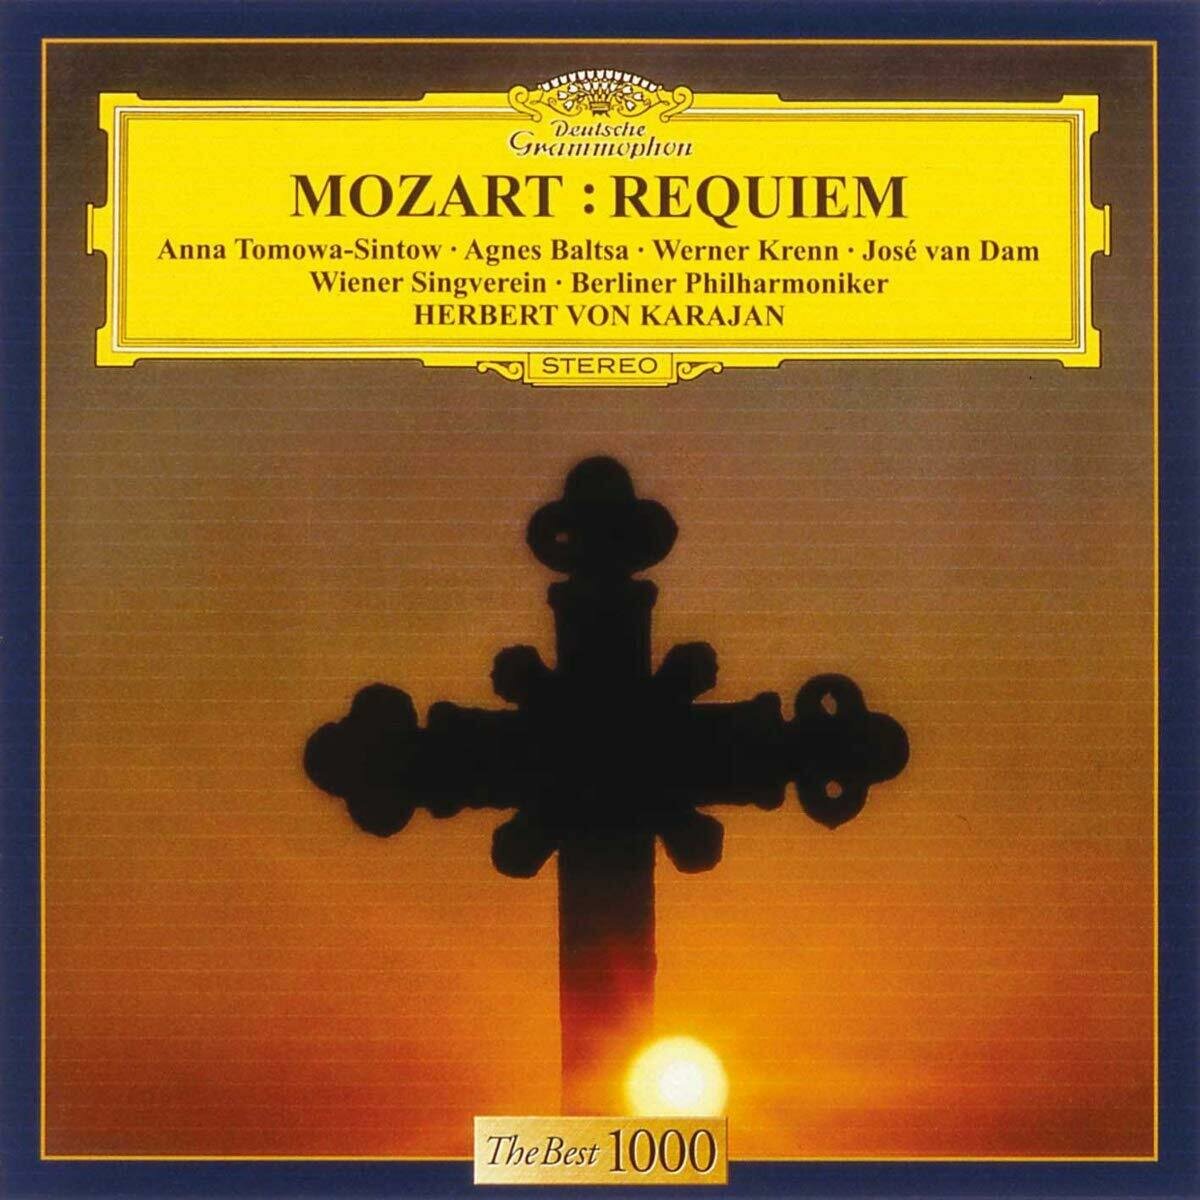 AUDIO CD MOZART. Requiem. Karajan 1975 (1 CD)